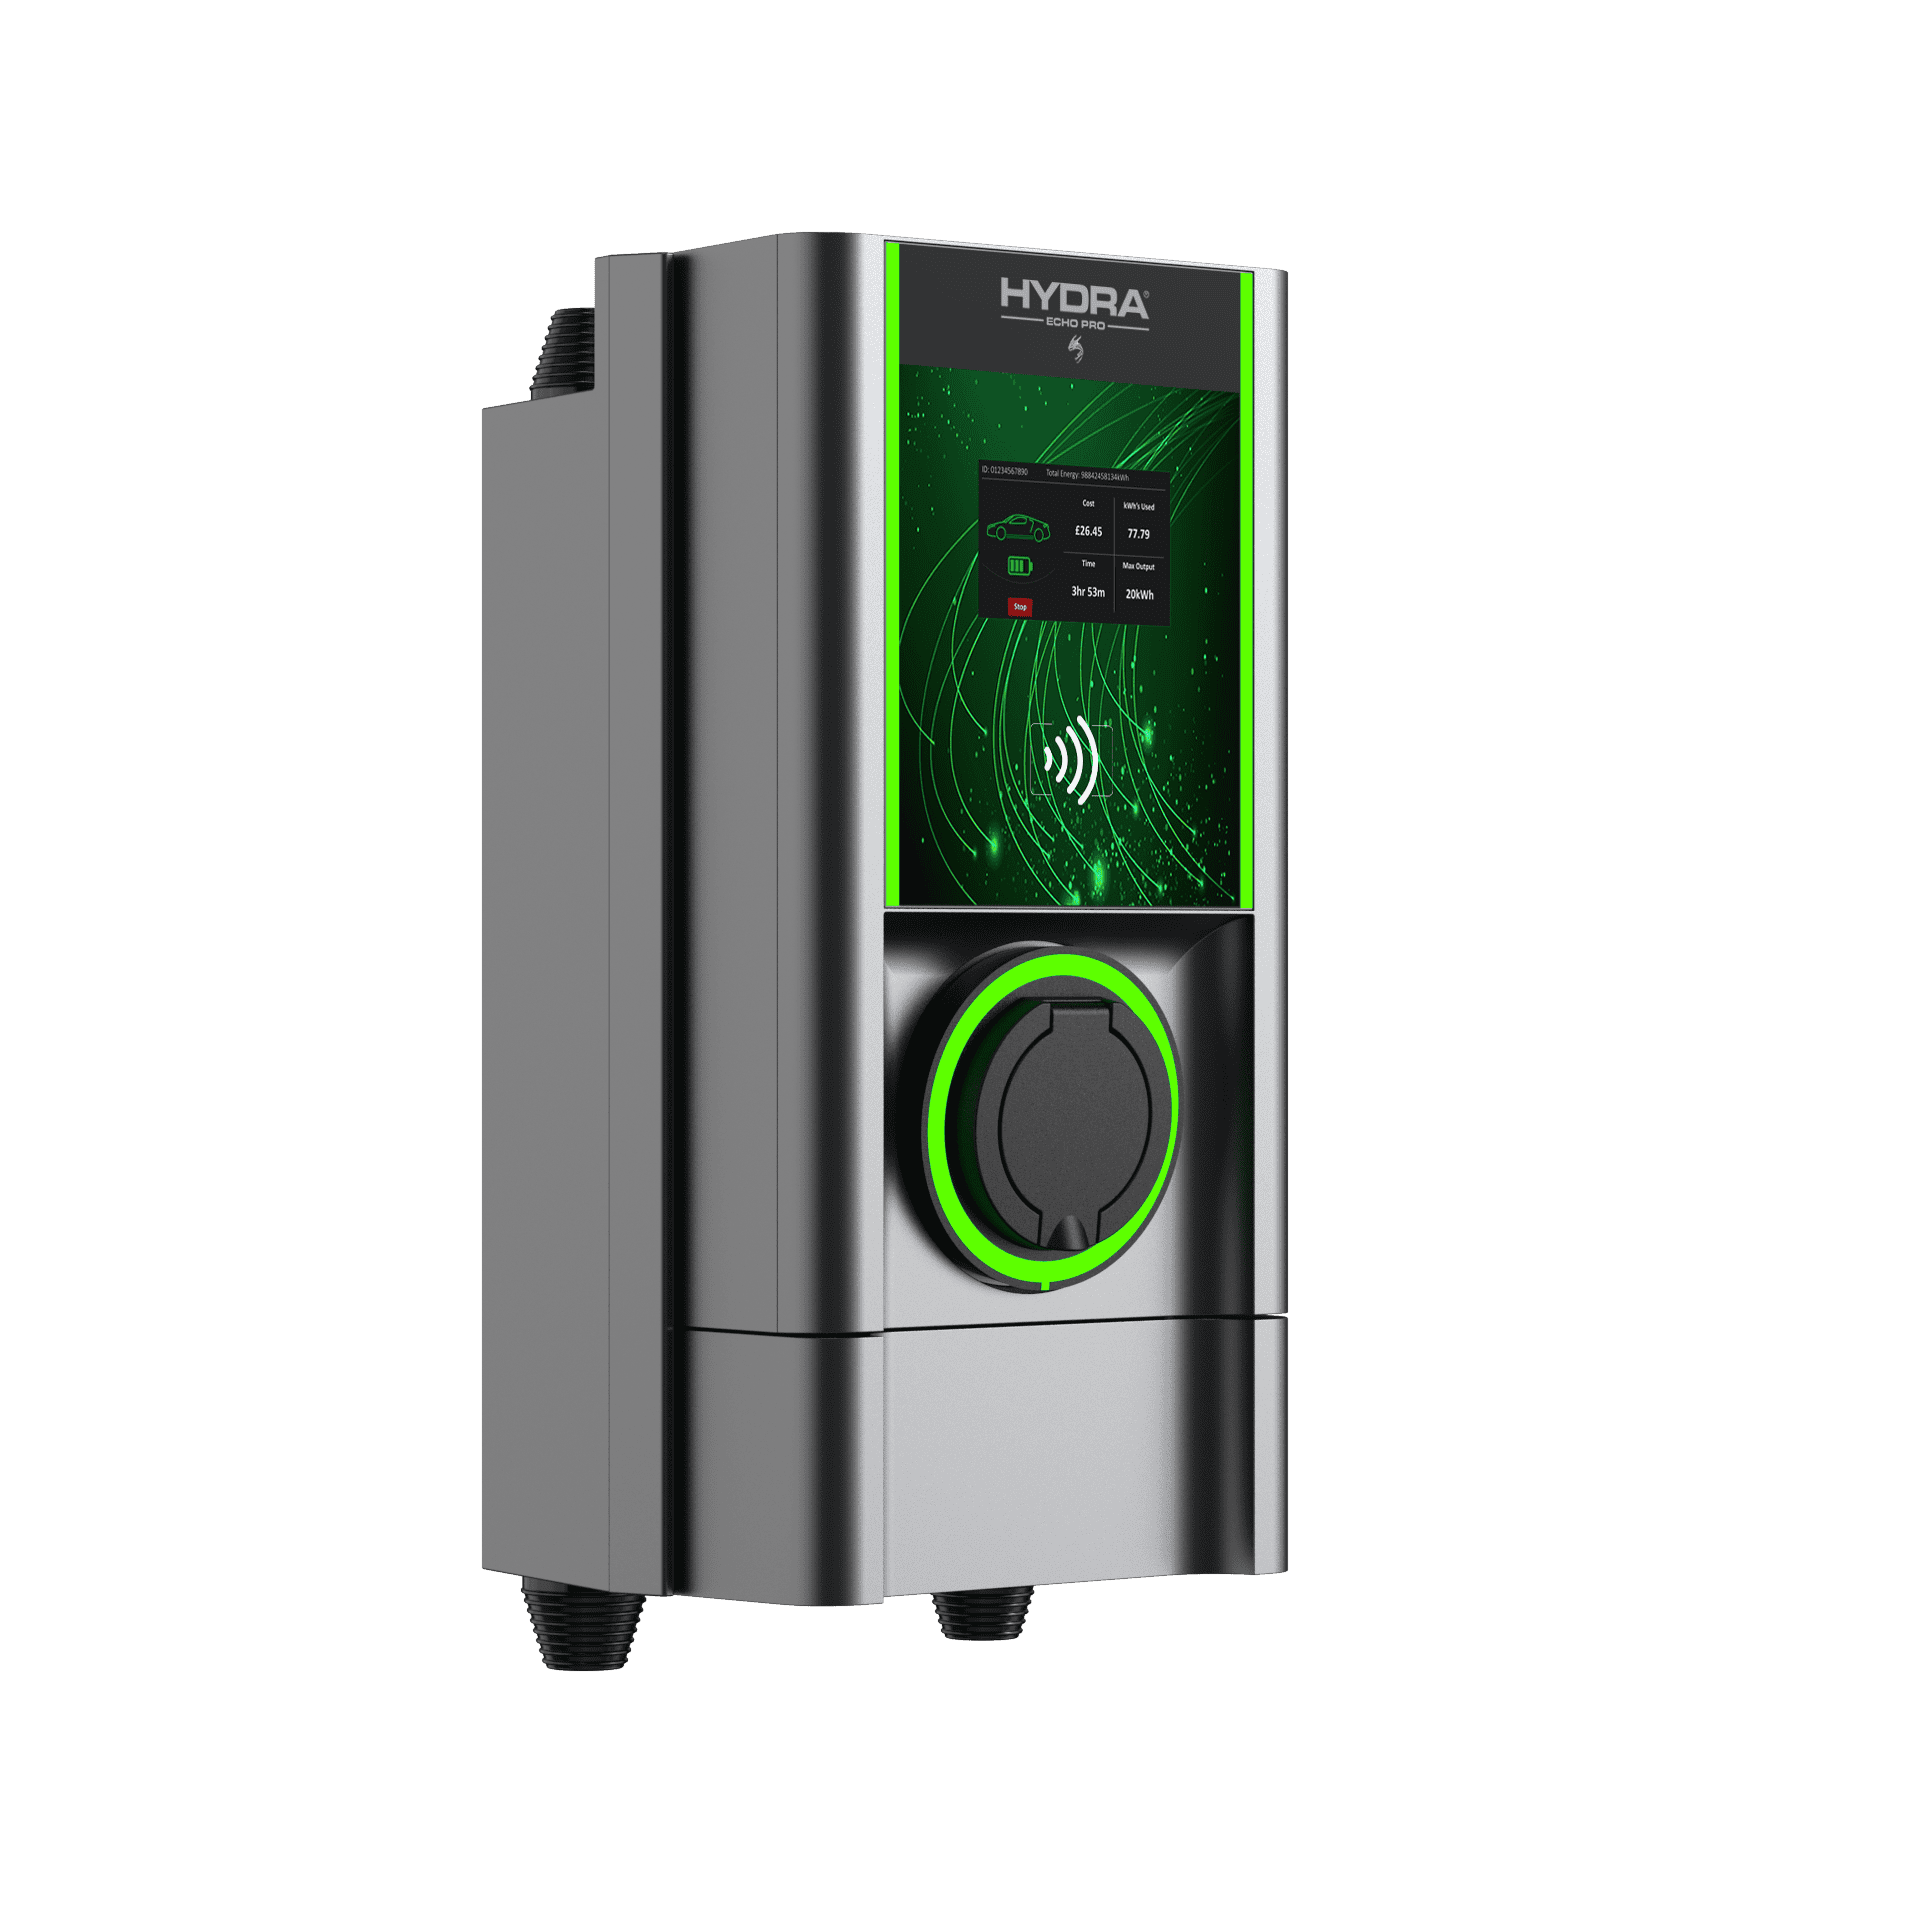 Hydra Echo Pro 7kW/ 22kW – untethered